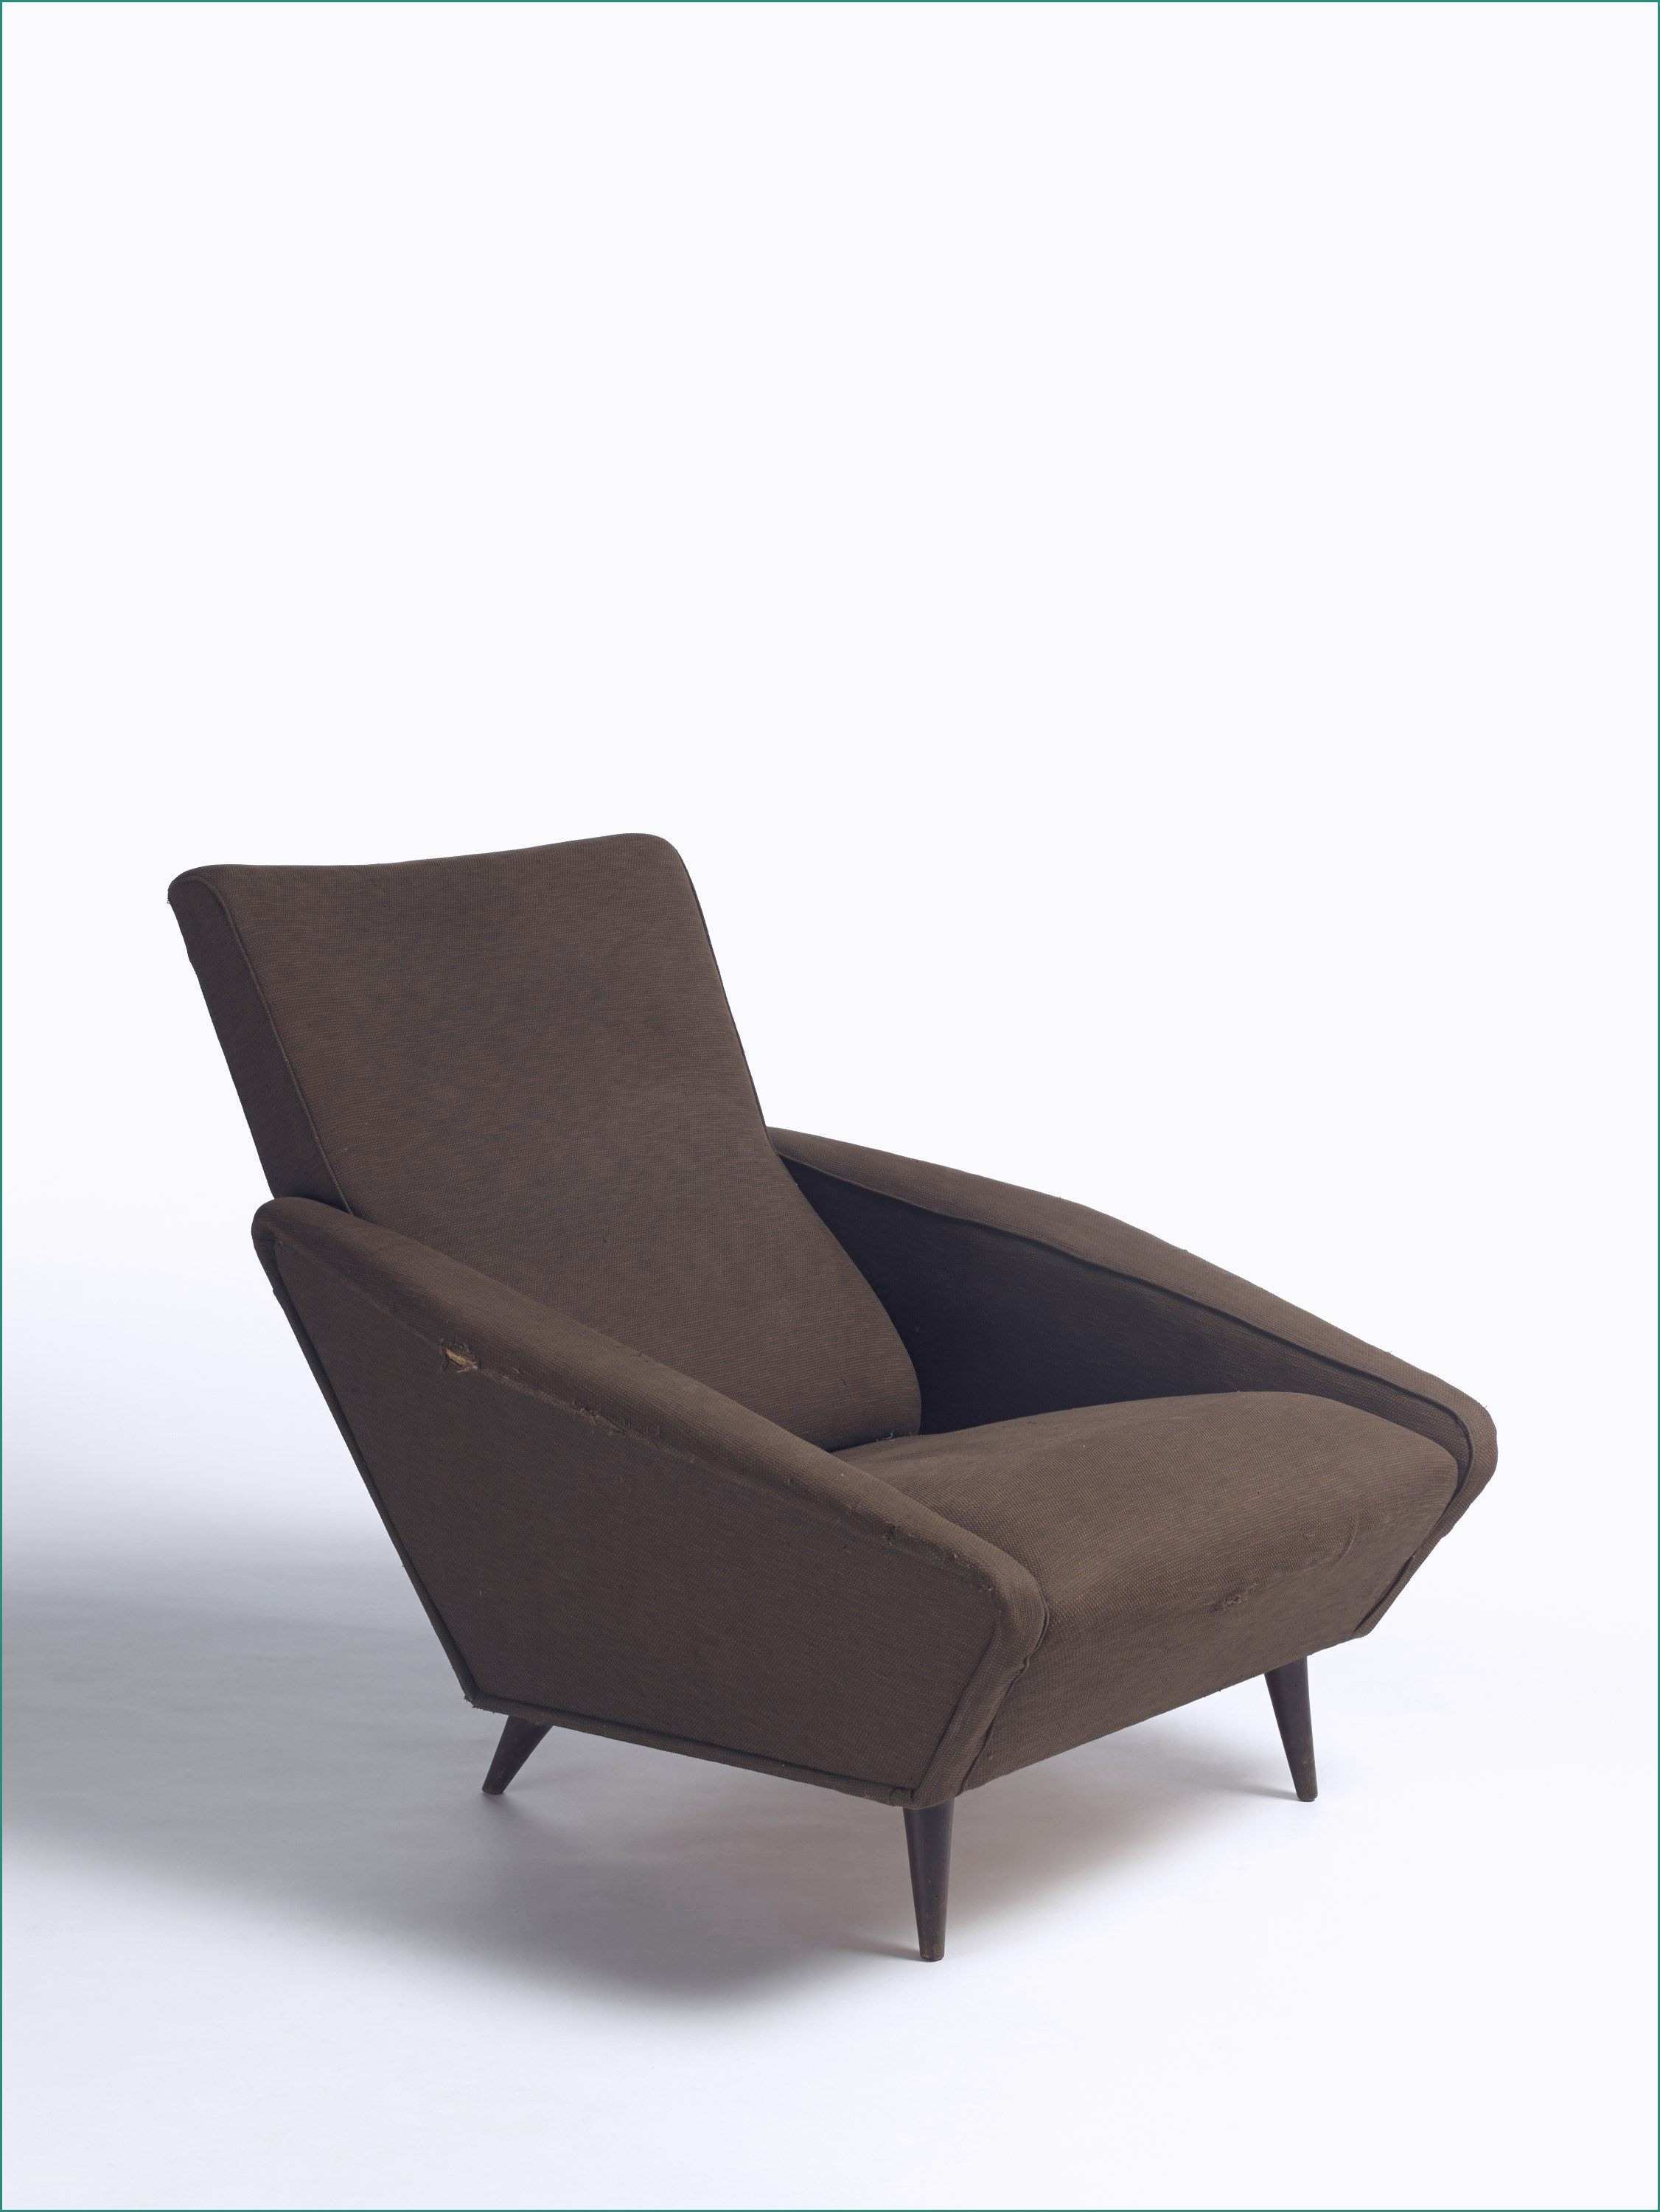 Poltrona Le Corbusier E 25 Impressionante Poltrona Chaise Longue